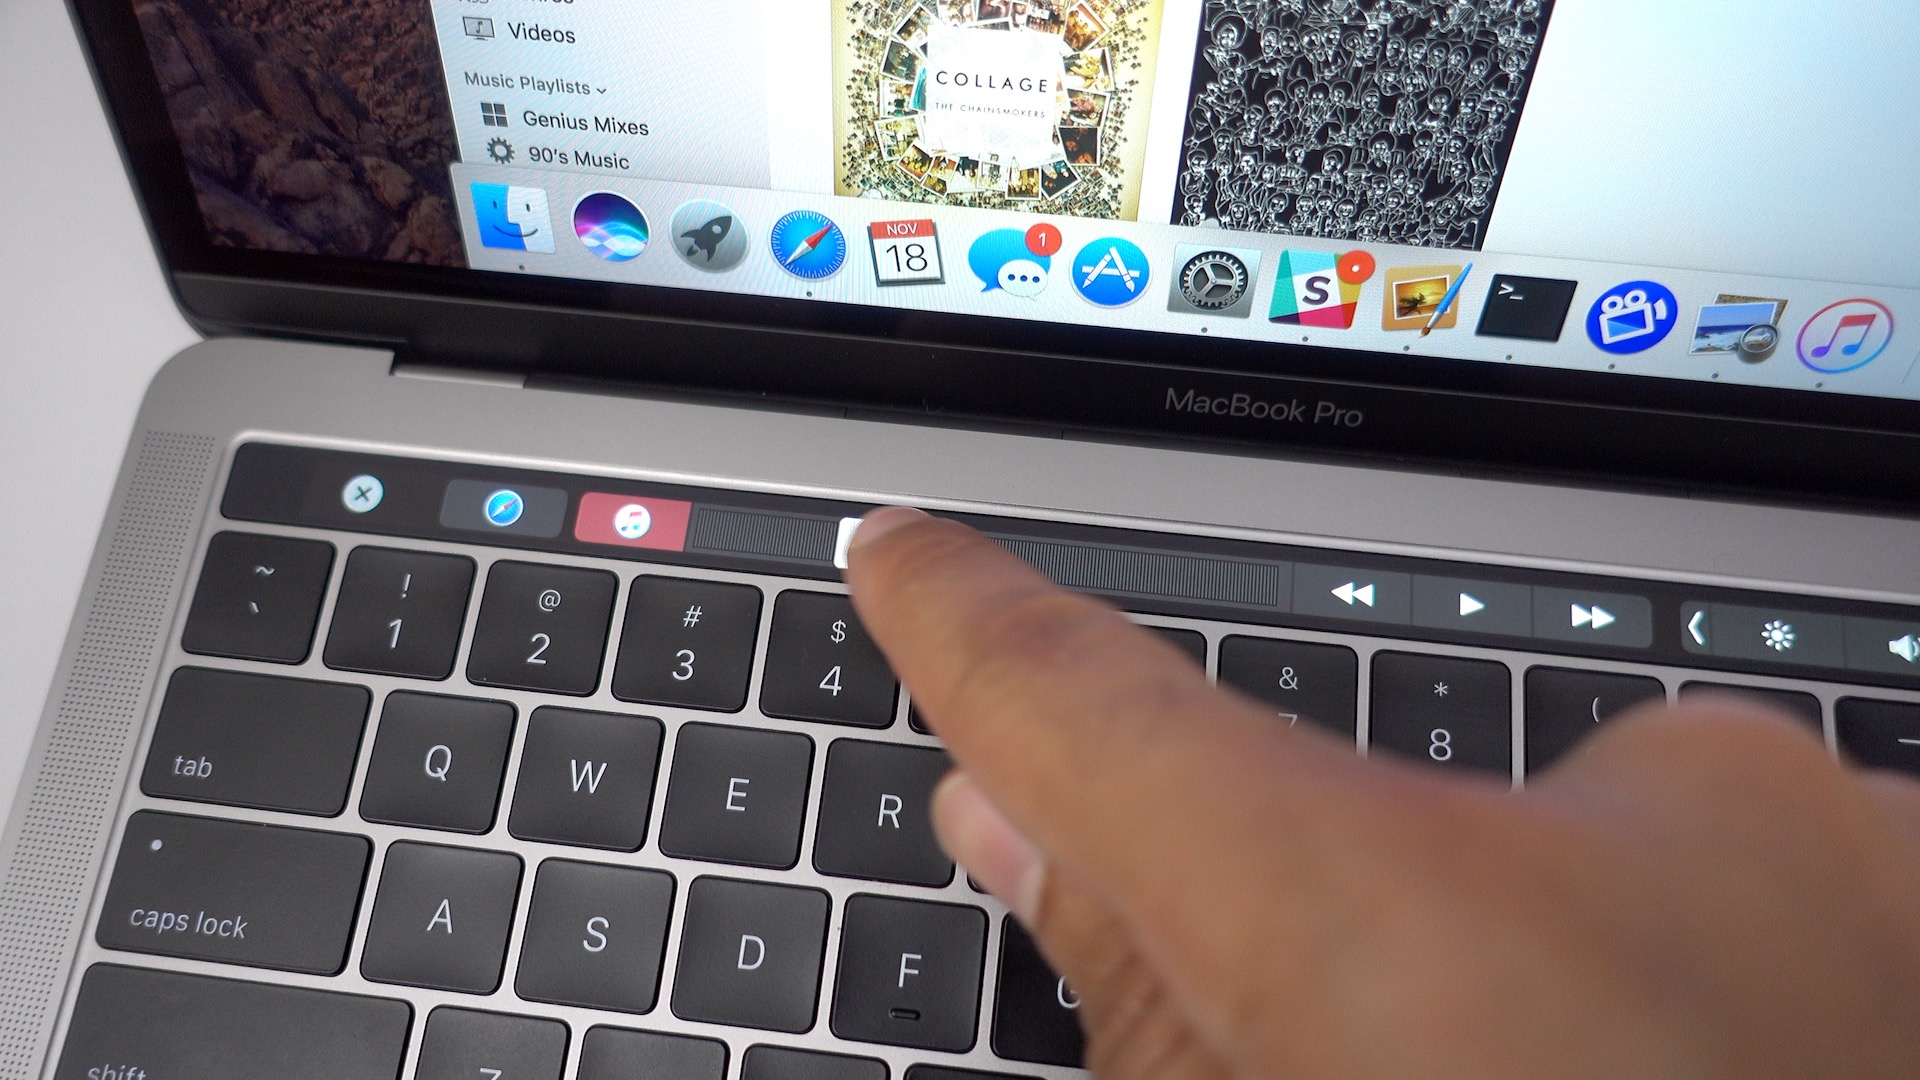 mac shutdown shortcut touch bar